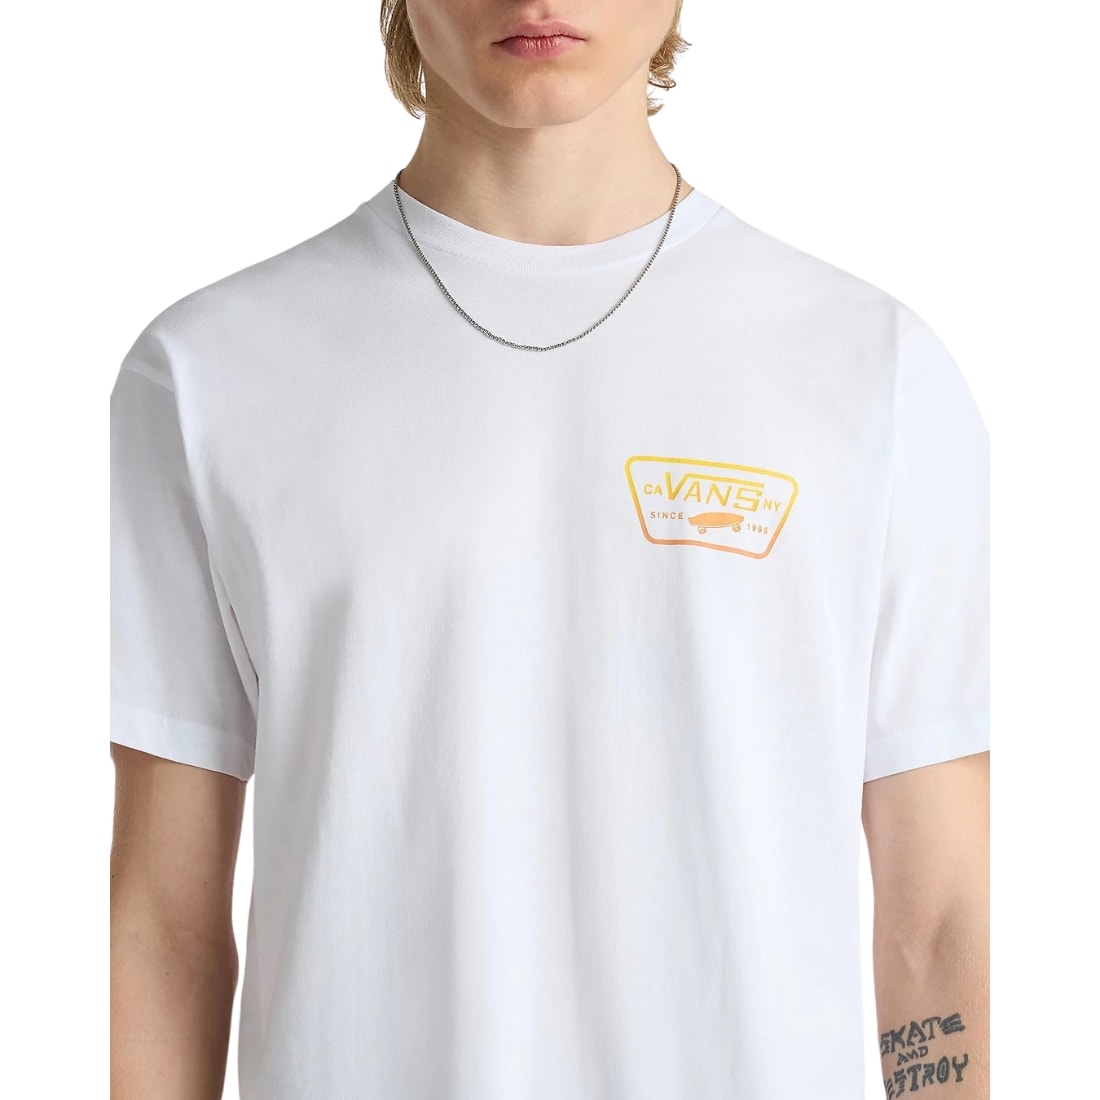 Vans Full Patch Back T-Shirt - White/Copper Tan - Mens Skate Brand T-Shirt by Vans